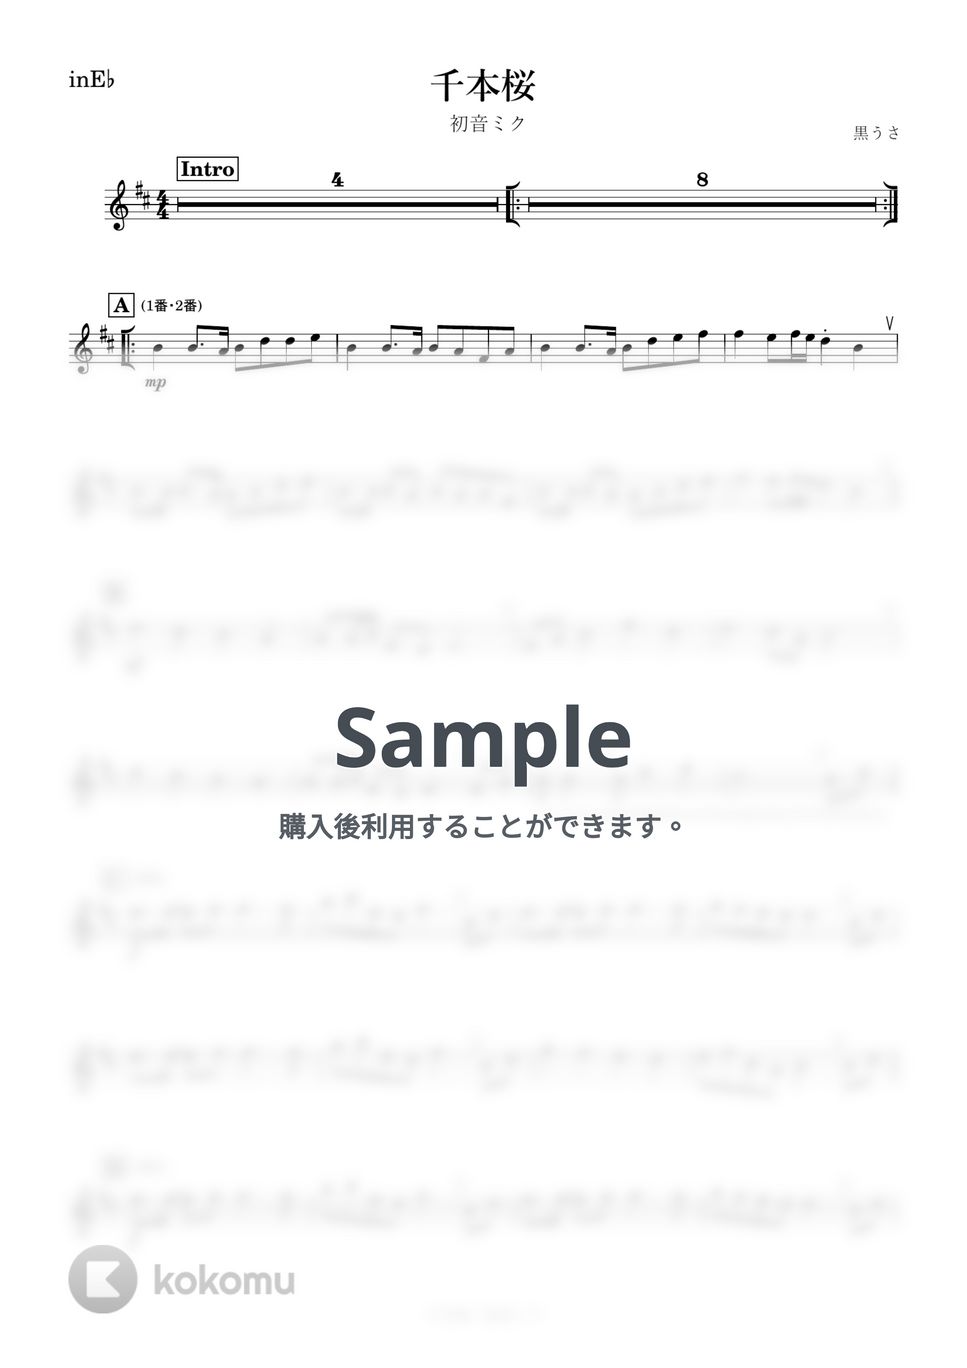 初音ミク - 千本桜 (E♭) by kanamusic